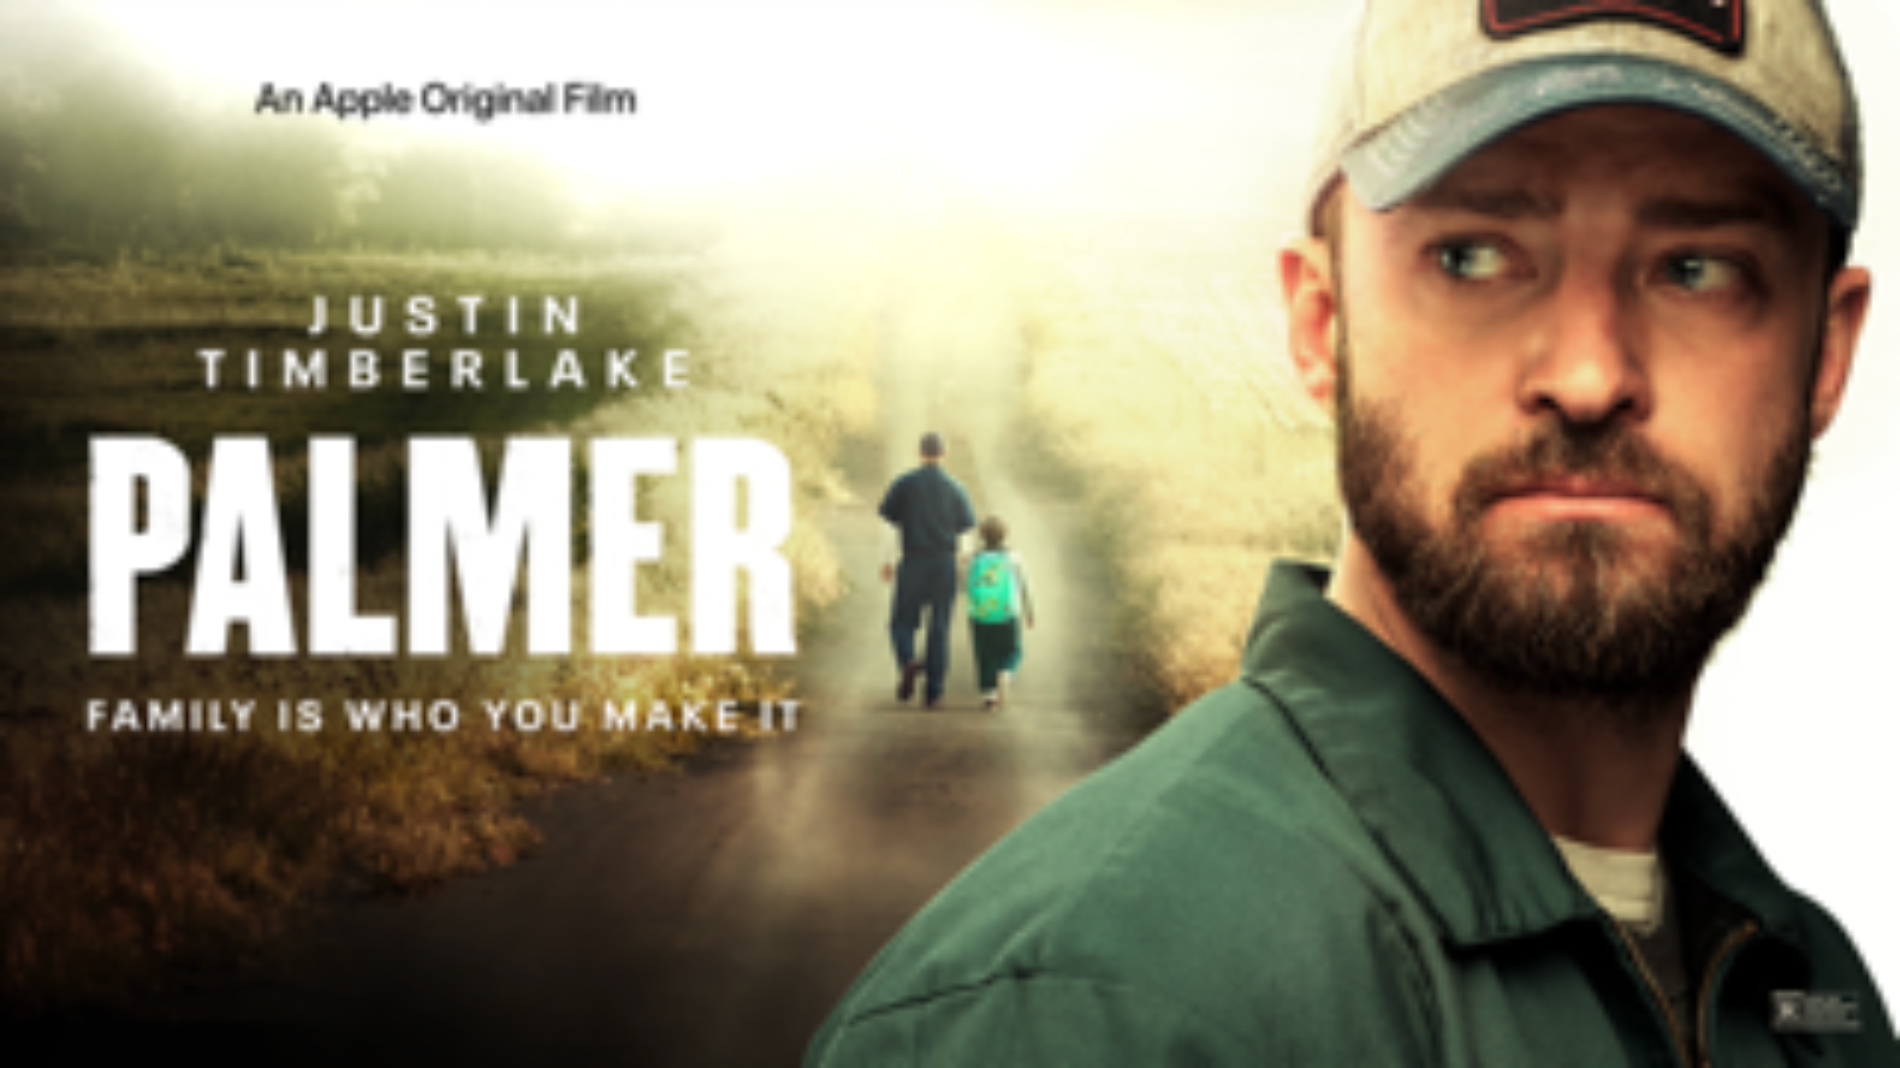 Justin Timberlake regresa al cine con Palmer, el nuevo estreno de Apple Original Films